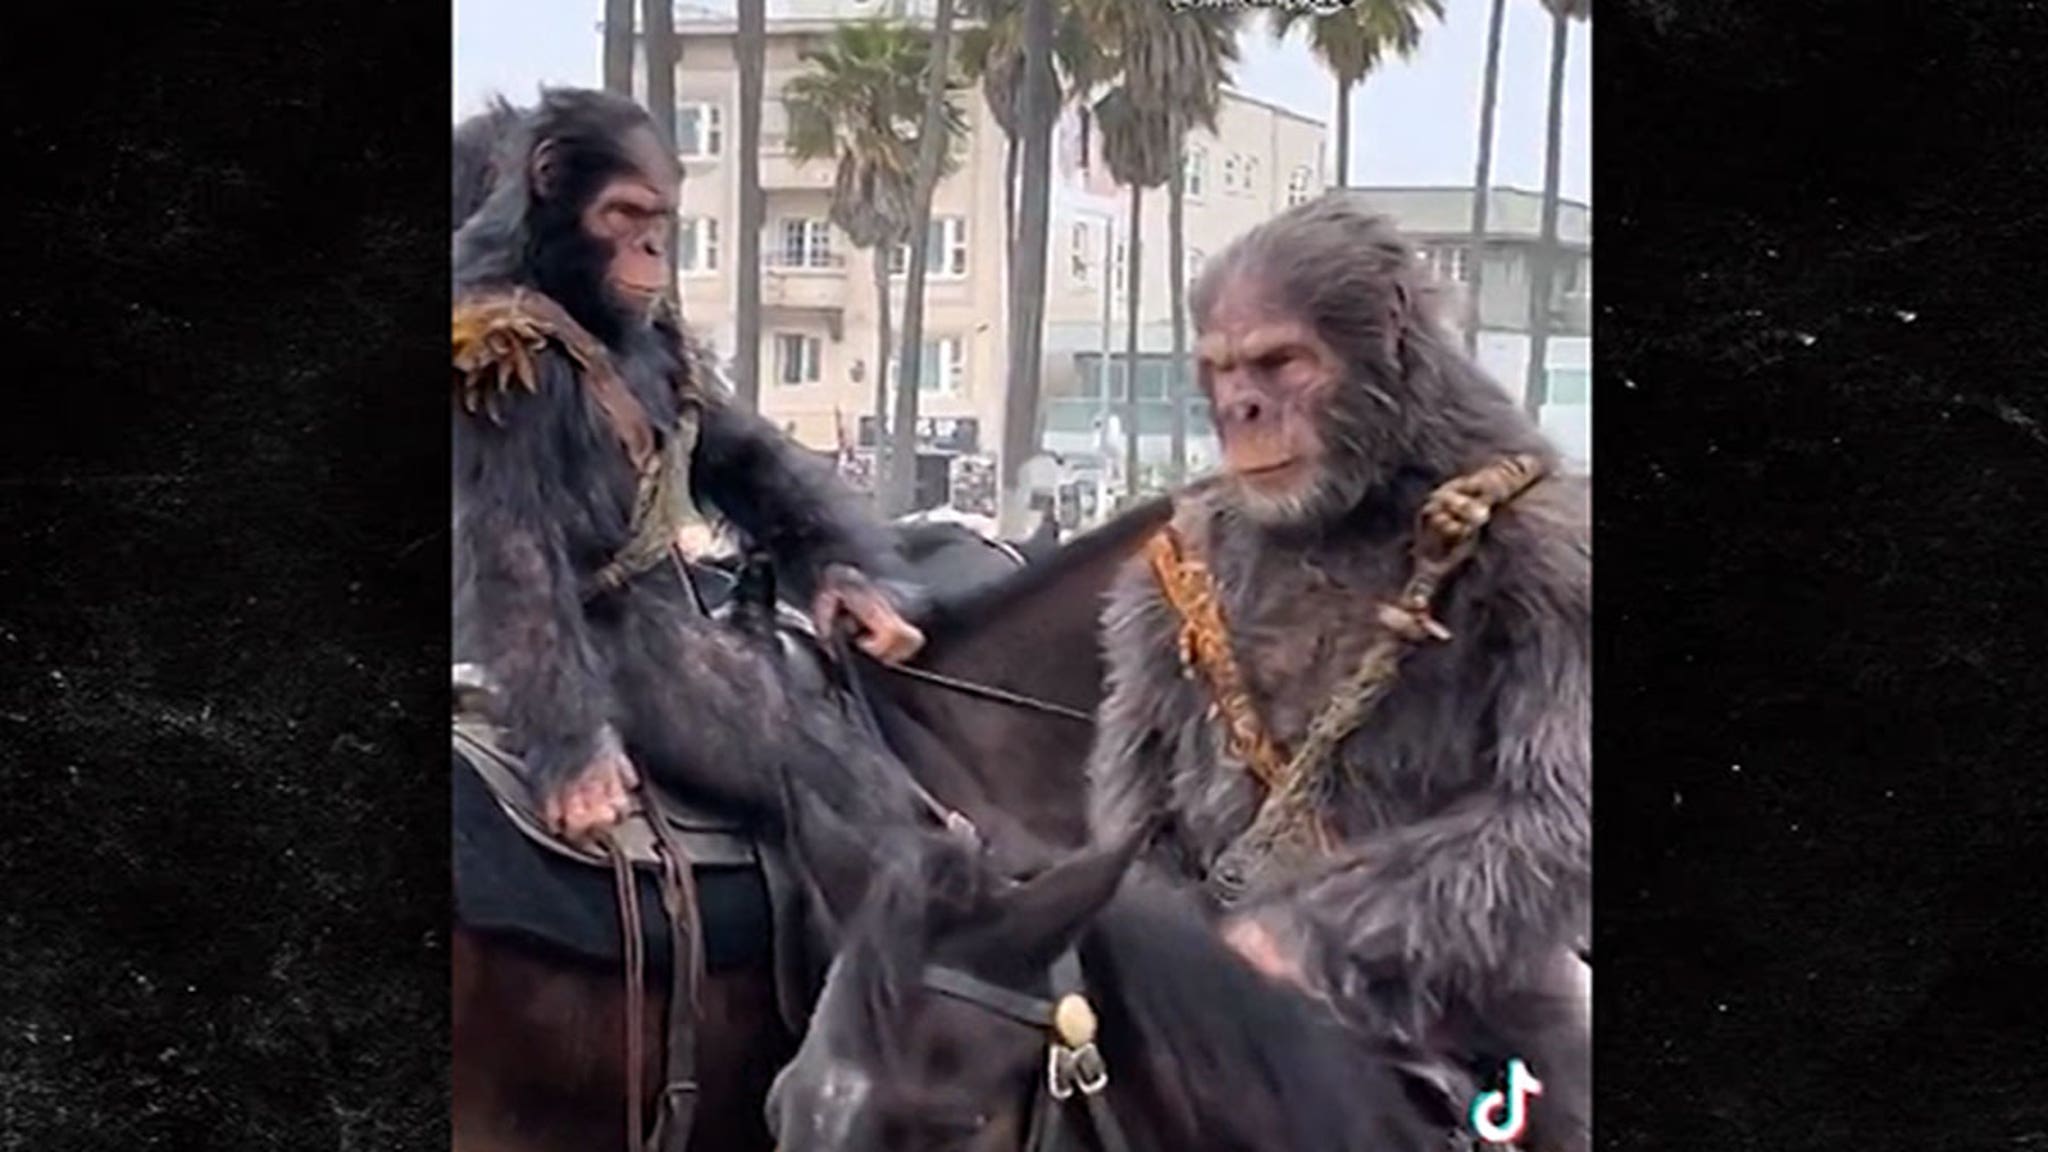 Le scimmie arrivano a Venice Beach a cavallo per il nuovo trailer “Il pianeta delle scimmie”.